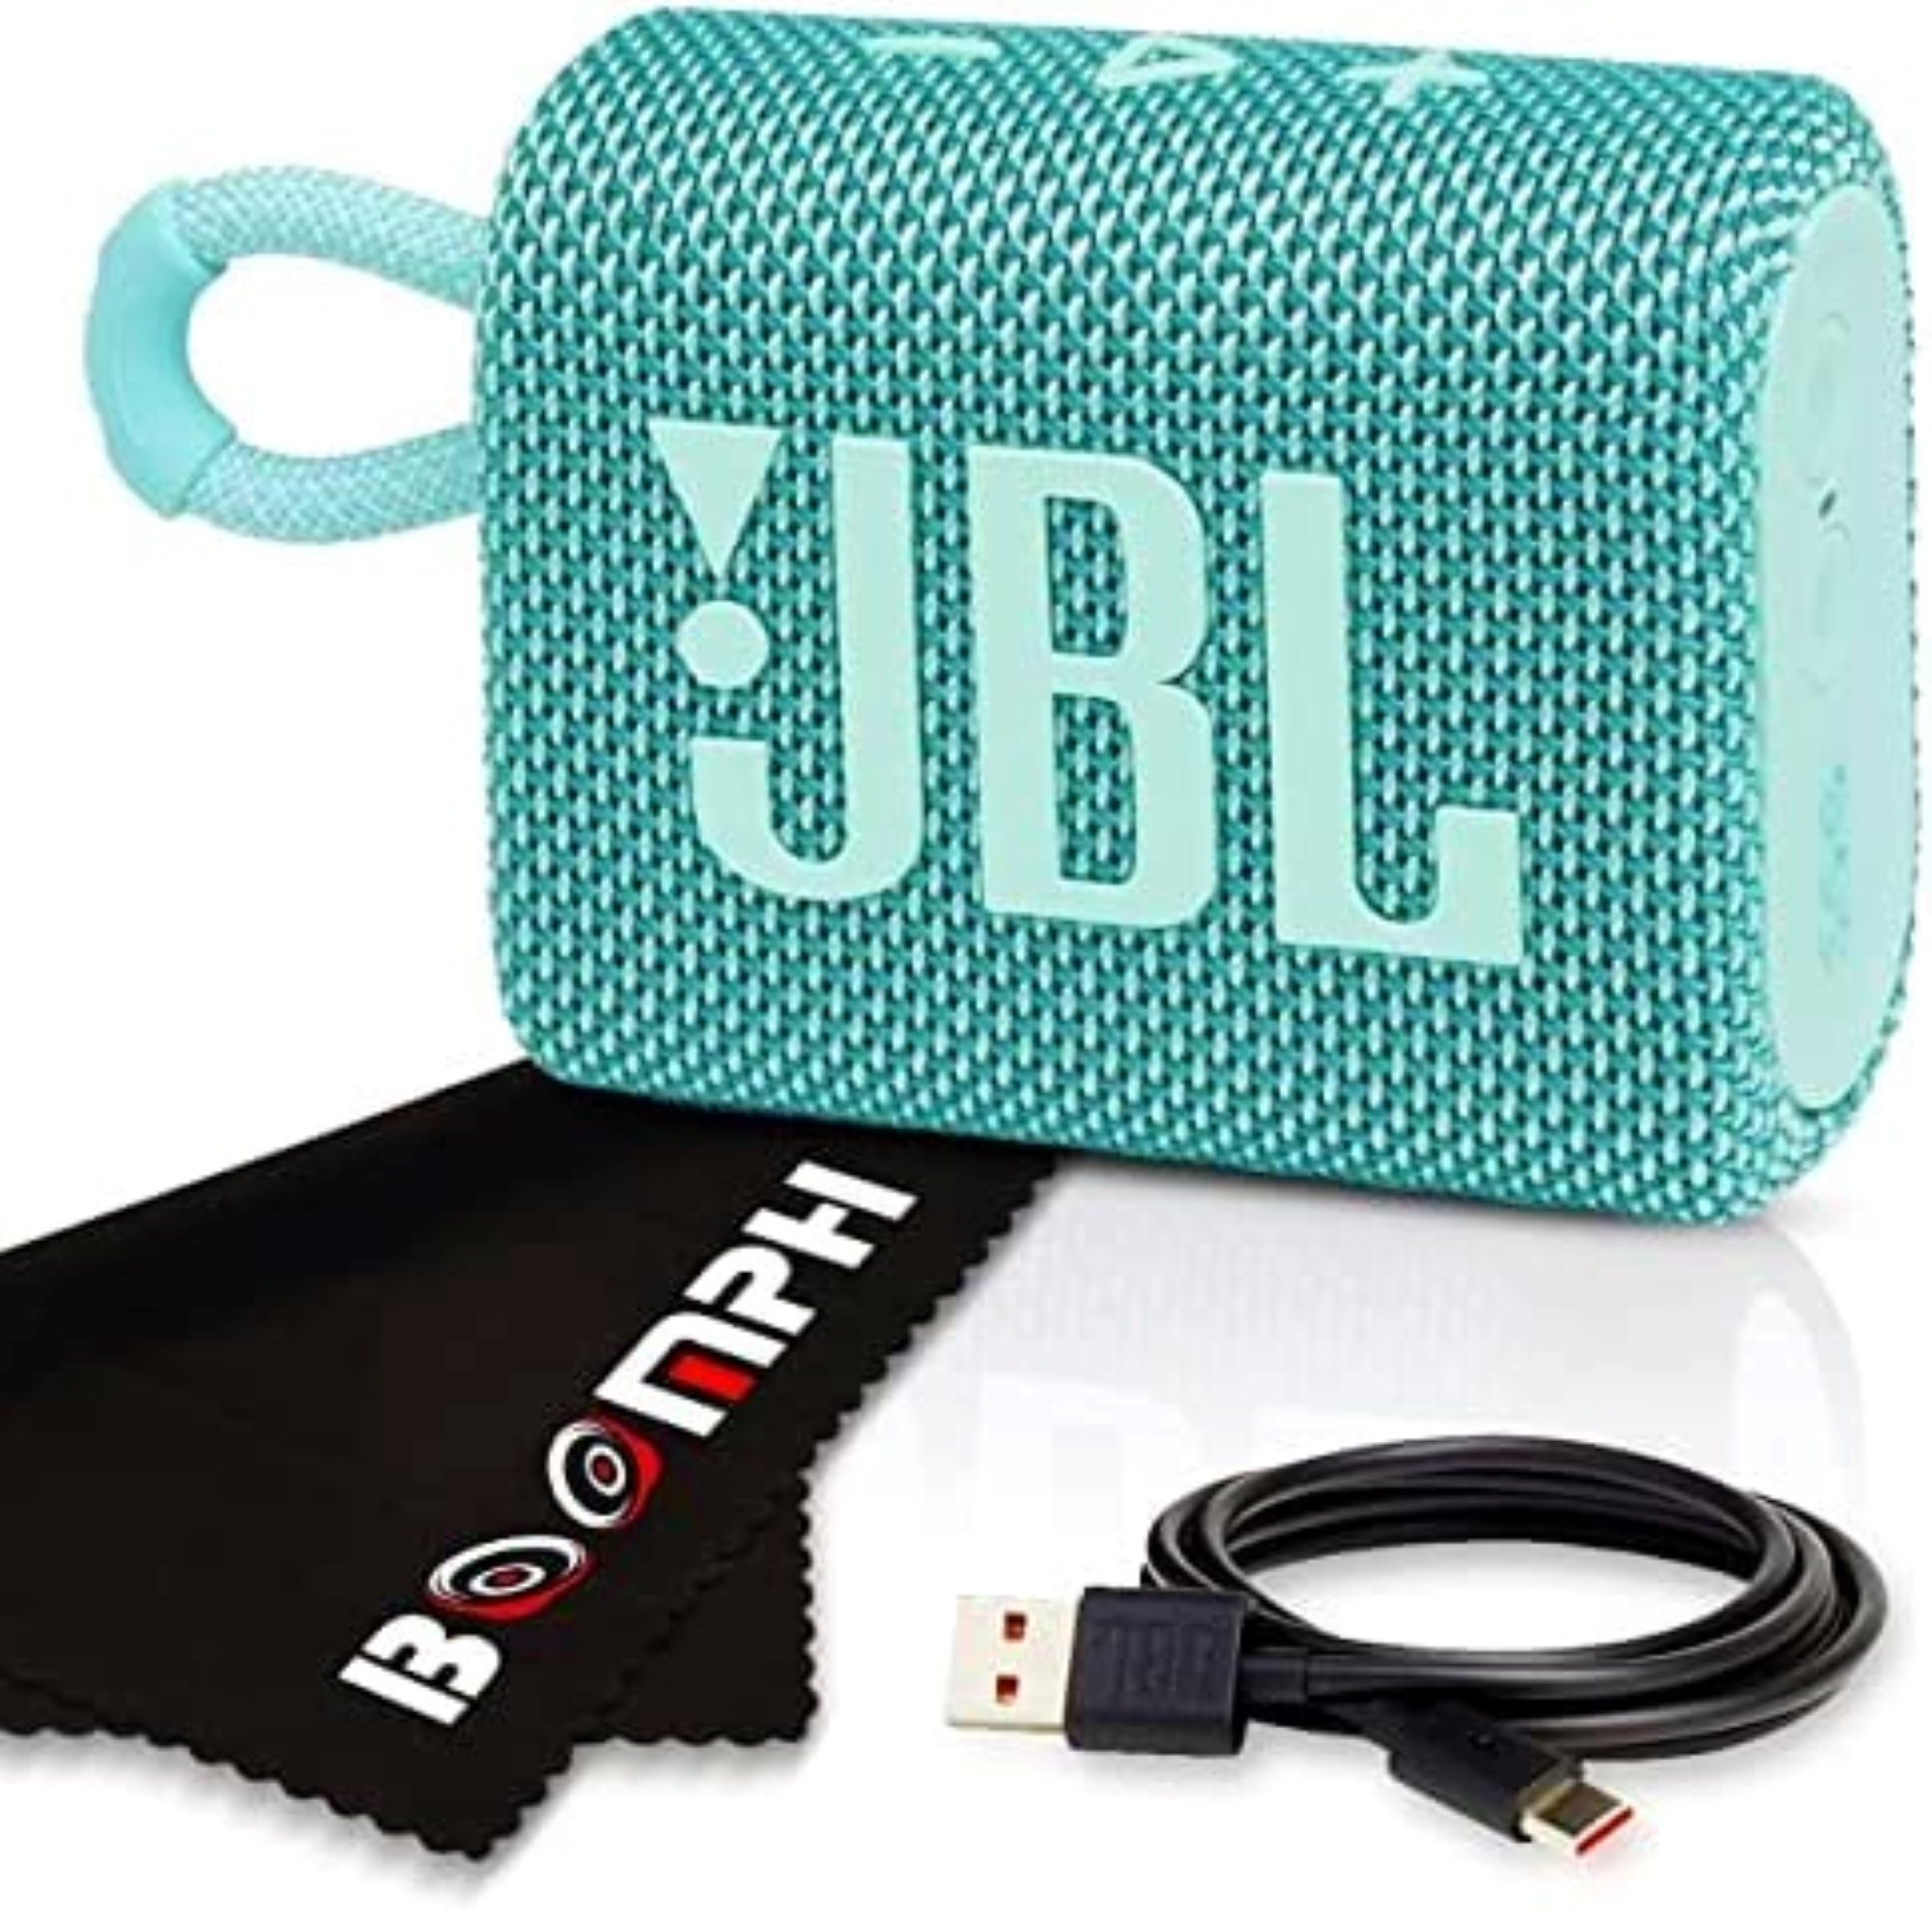 JBL Go 3: Altavoz portátil con Bluetooth, batería integrada, Resistente al  Agua y al Polvo - Verde Azulado JBL GO 3